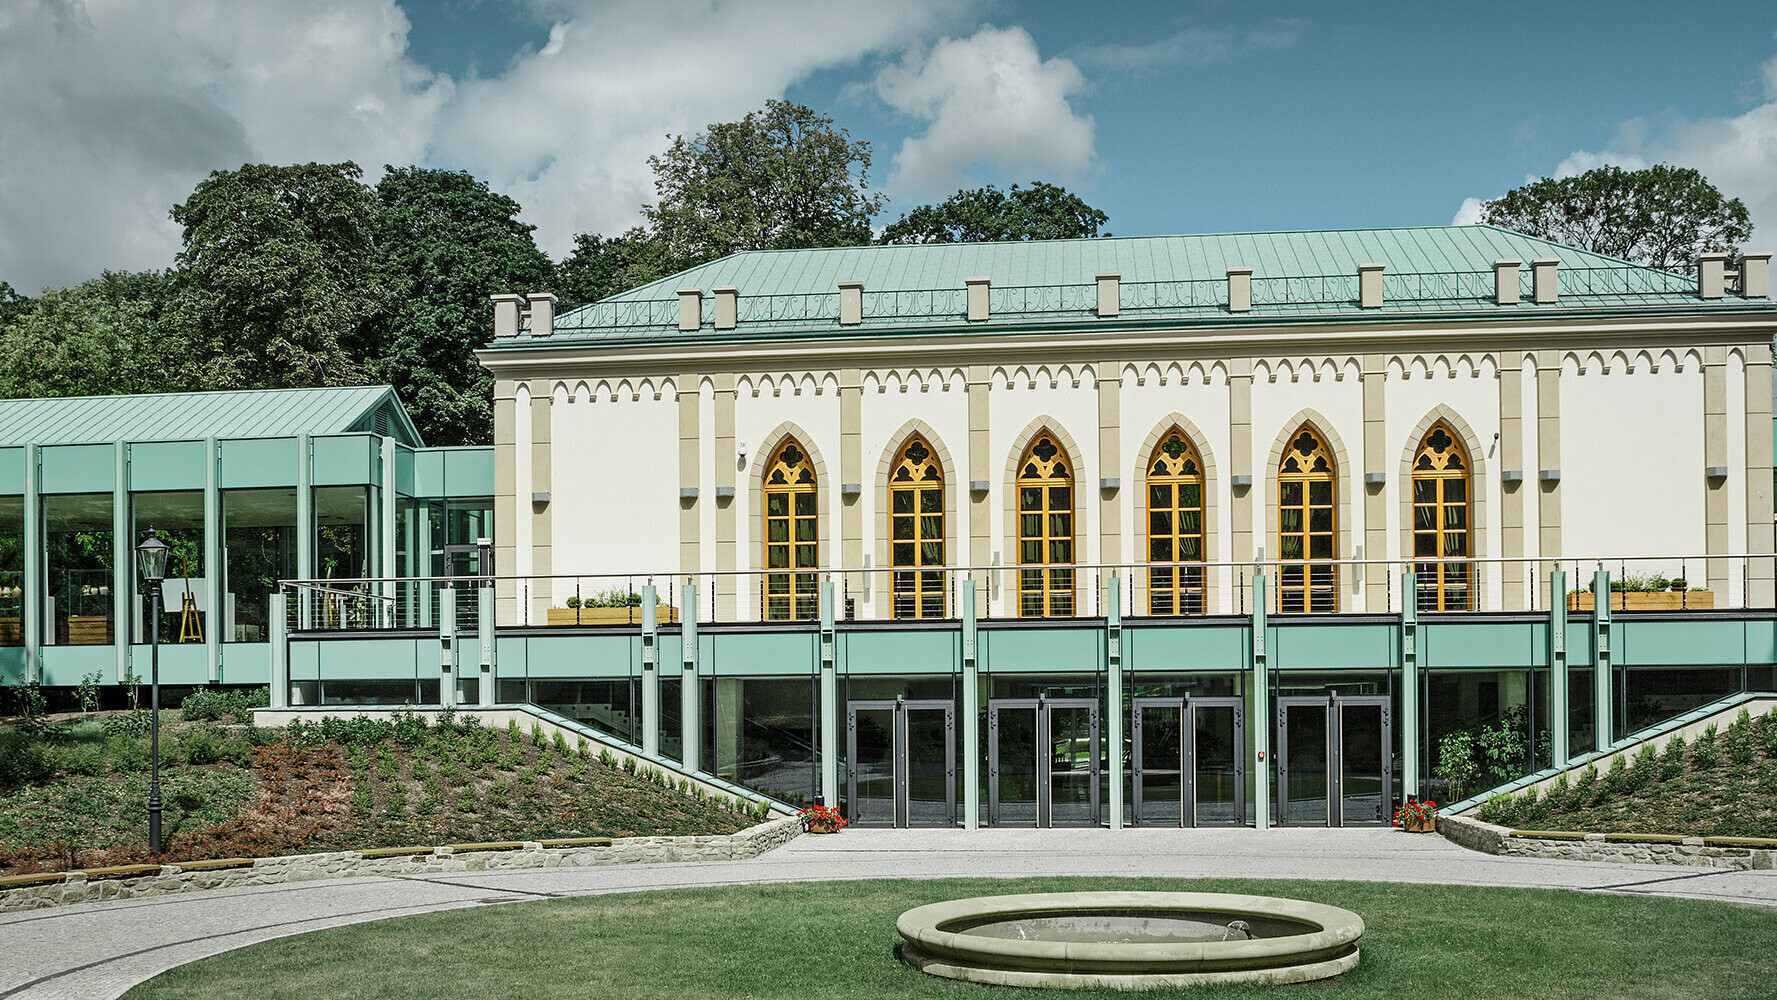 Polské muzeum Opinogóra bylo při sanaci střechy pokryto materiály Prefalz a Falzonal v barvě patina zelená.